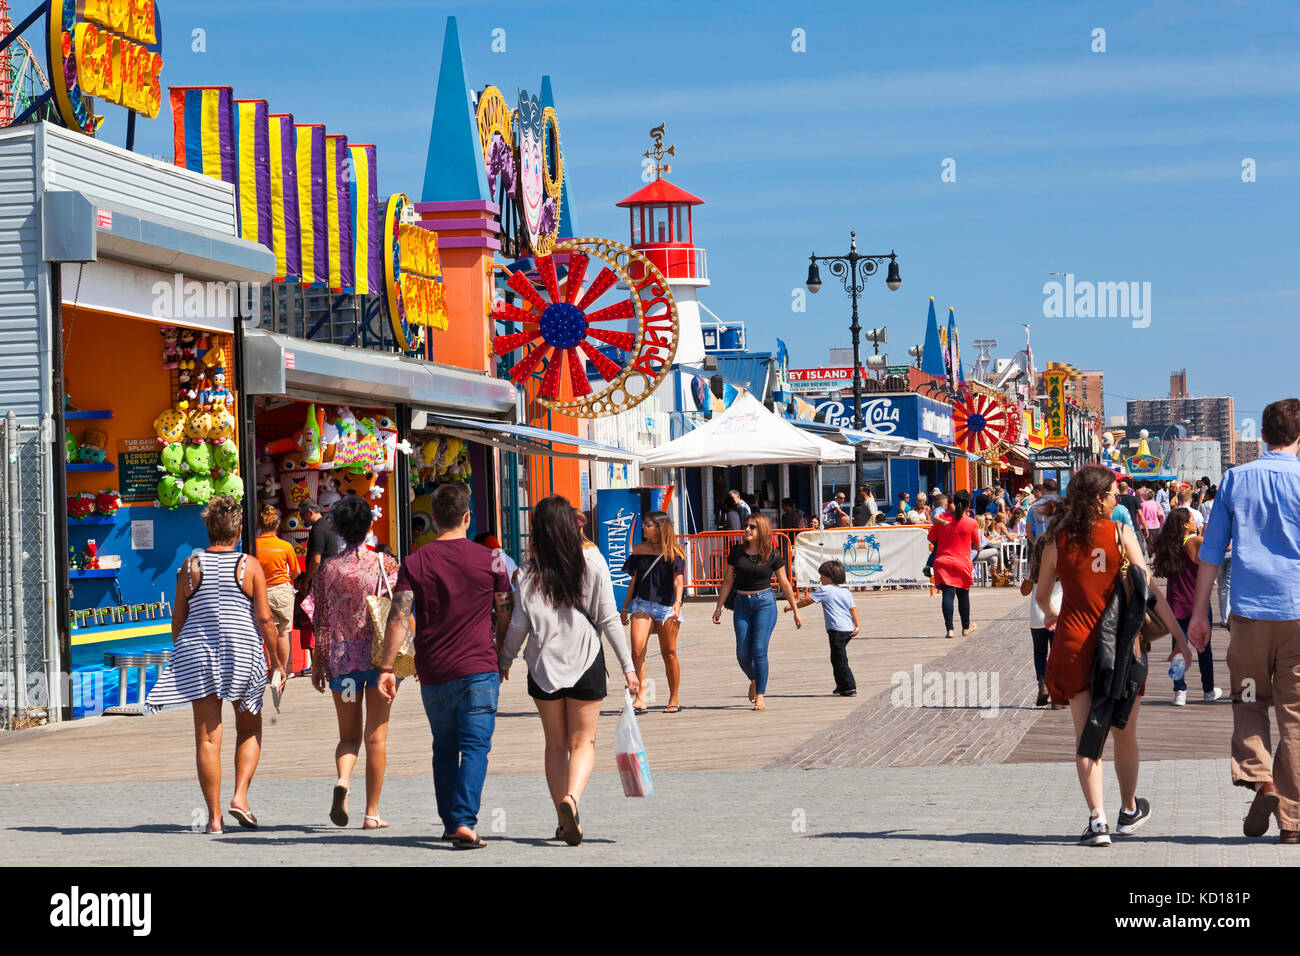 Comunemente noto come Coney Island Boardwalk, il Reigelmann Boarkwalk si estende per 2,5 miglia lungo la sponda sud di Coney Island ed è rivestito internamente con il parco dei divertimenti di giostre e attrazioni, Coney Island, Brooklyn, New York, New York, U.S.A. Foto Stock